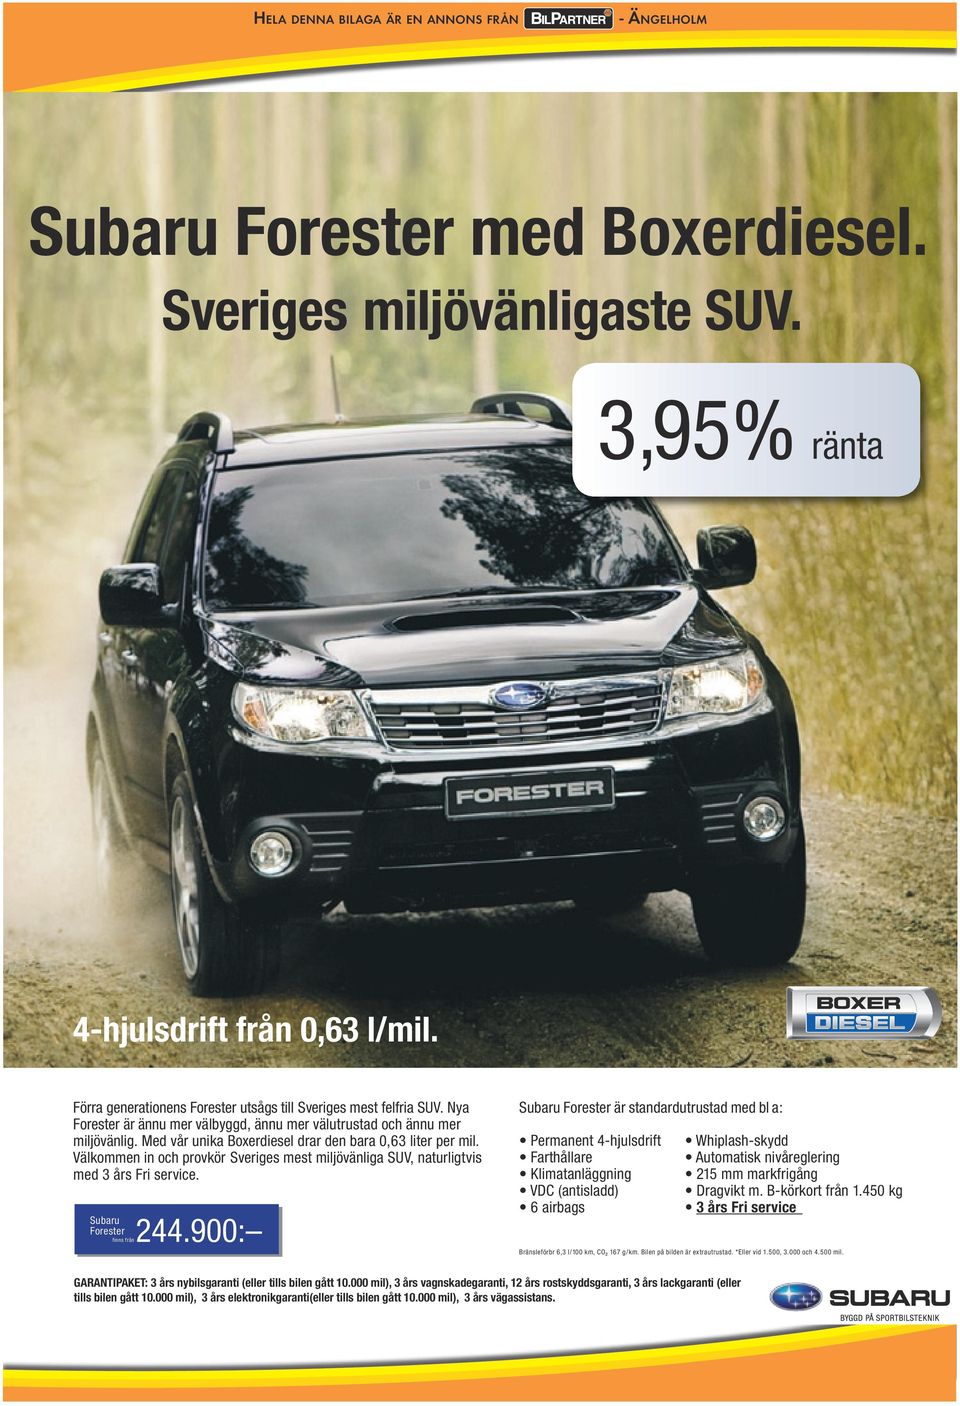 Välkommen in och provkör Sveriges mest miljövänliga SUV, naturligtvis med 3 års Fri service. Subaru Forester finns från 244.